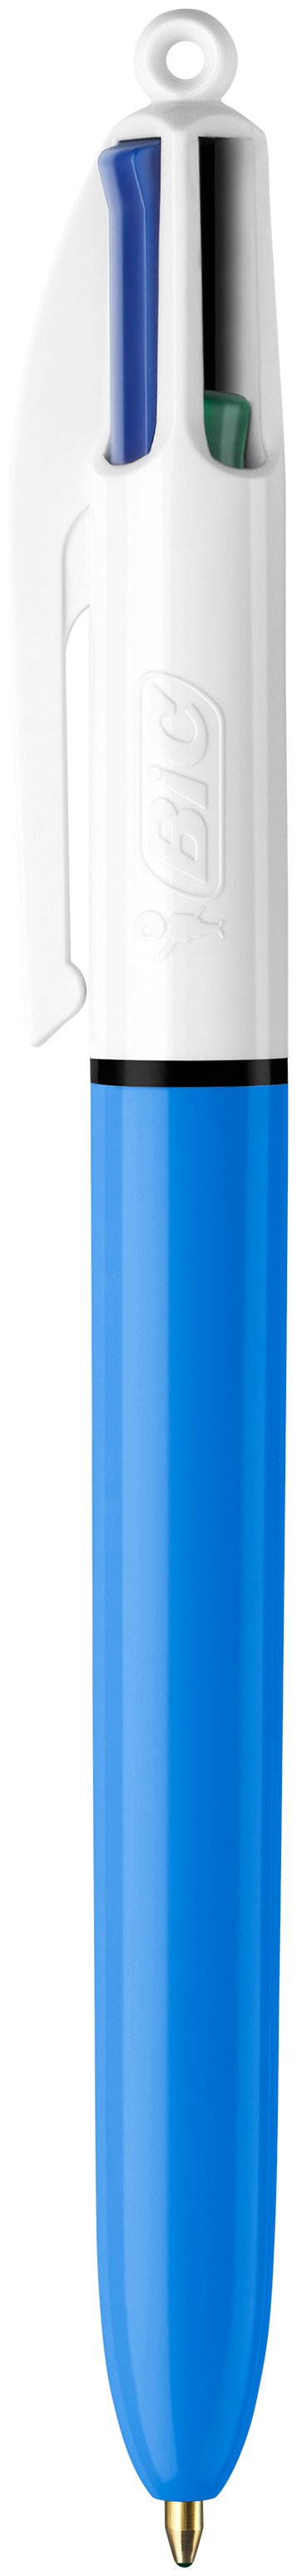 BIC Stylo bille 4 couleurs rétractables Classique. Pointe Moyenne (1,0 mm).  Corps bleu